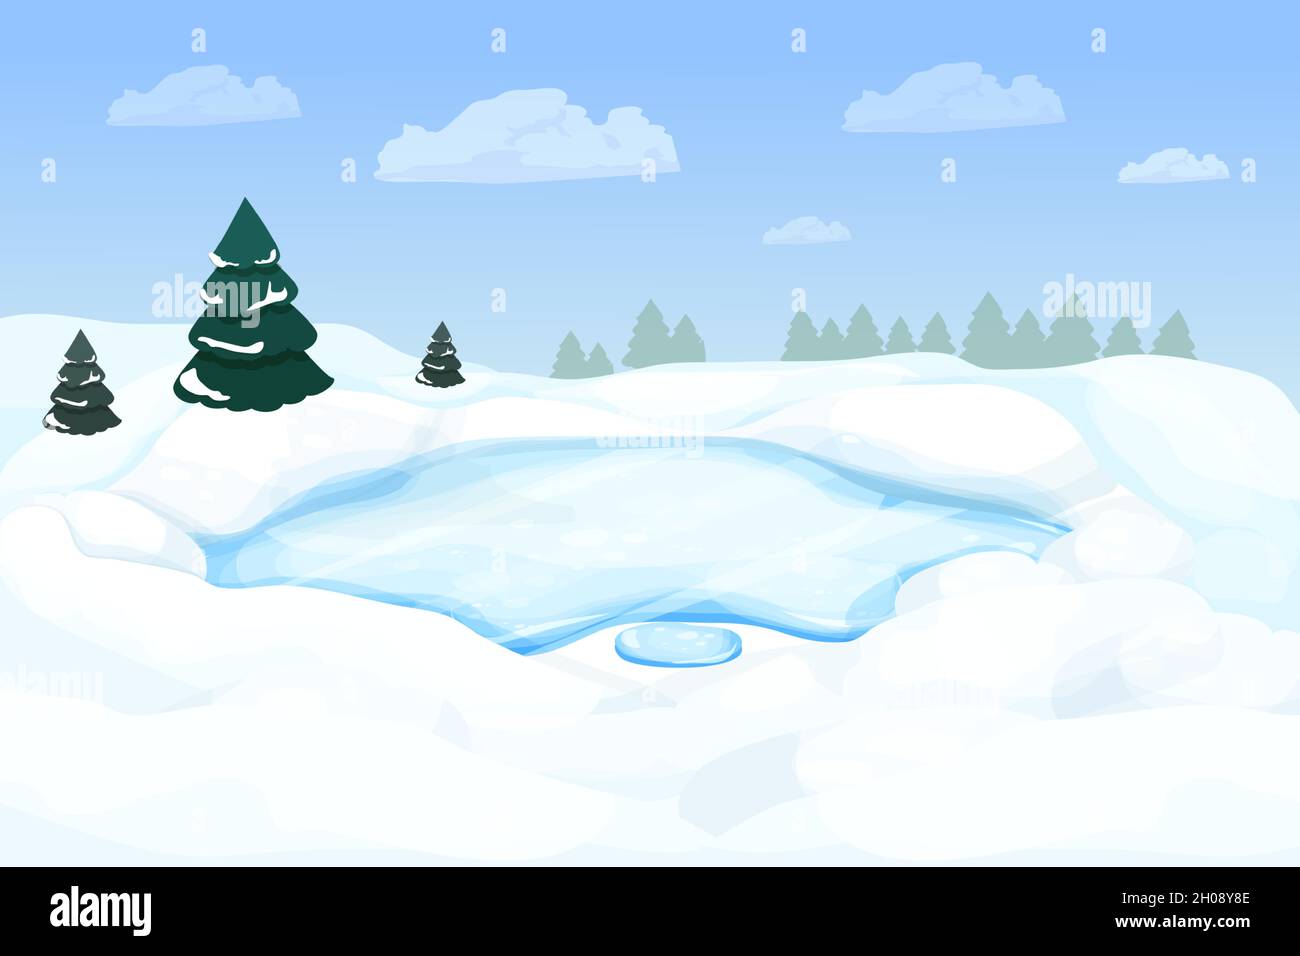 Winterlandschaft mit gefrorenem See, Fluss im Wald mit Schnee und Pinien im Cartoon-Stil. Verschneite Szene. Winterzeit, wilde und wilde Natur. Vektorgrafik Stock Vektor